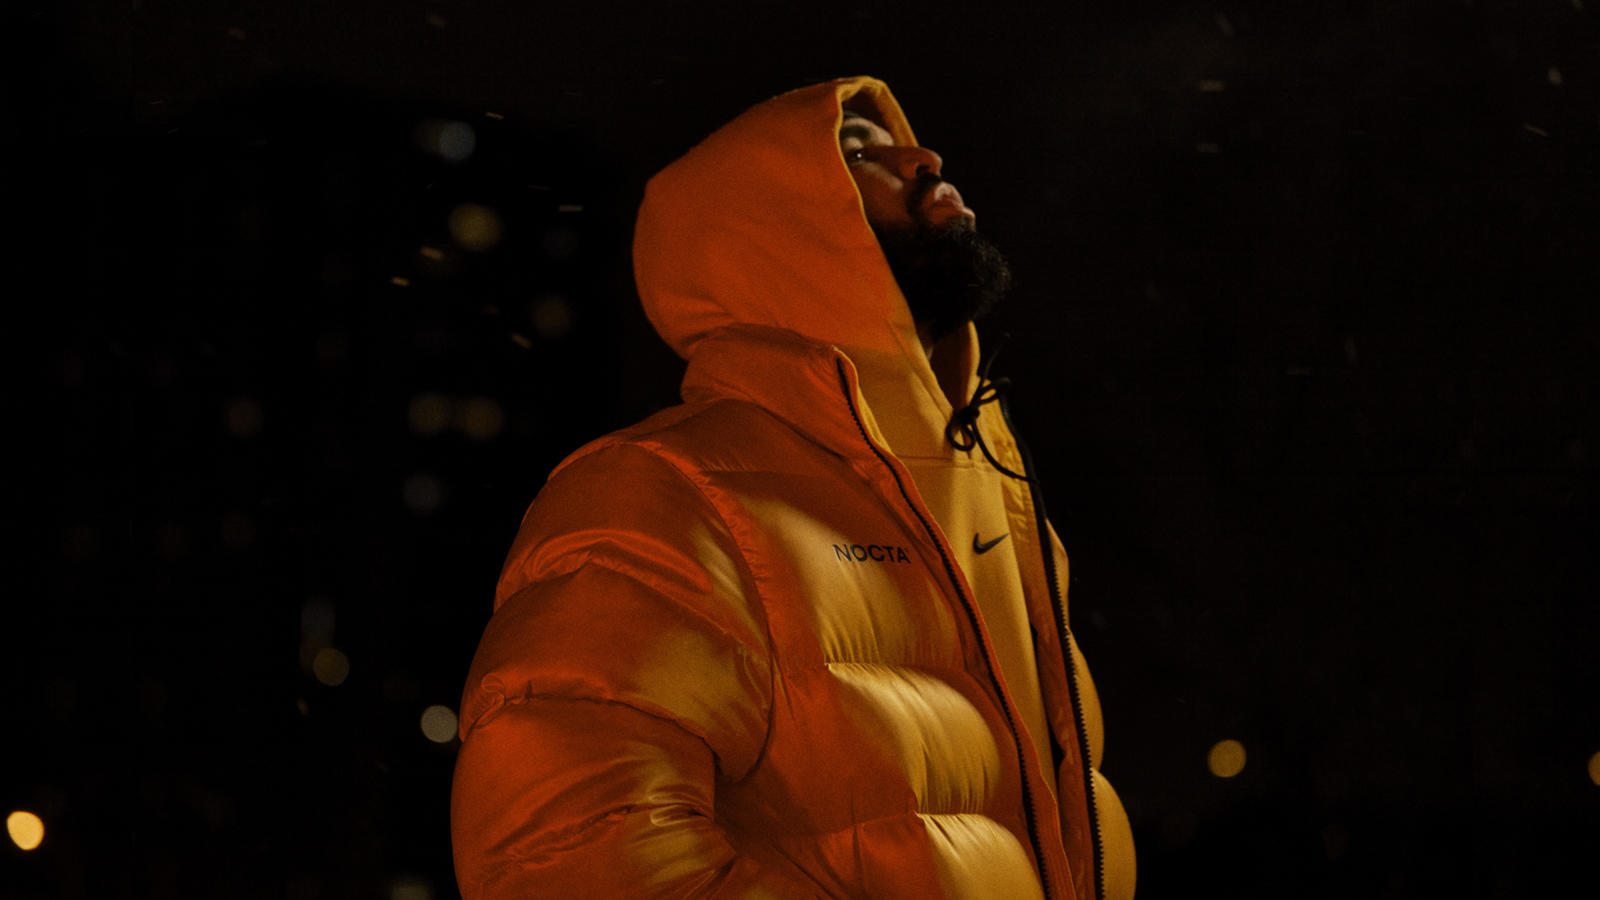 Comment copier le look de Drake avec Nike ?